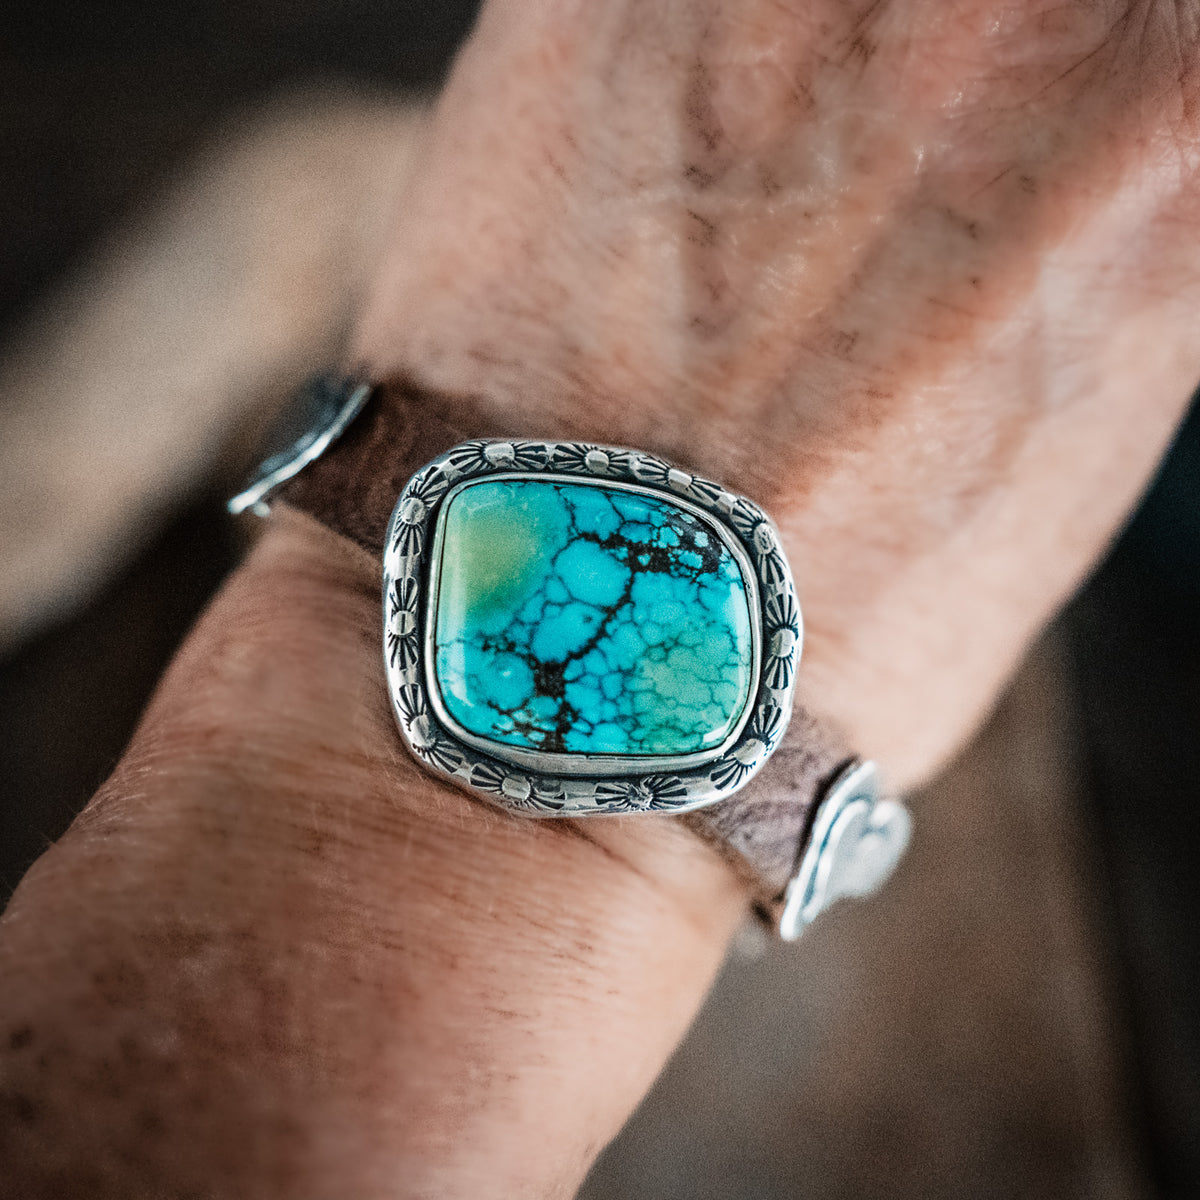 Nomad Bao Canyon Turquoise Bracelet